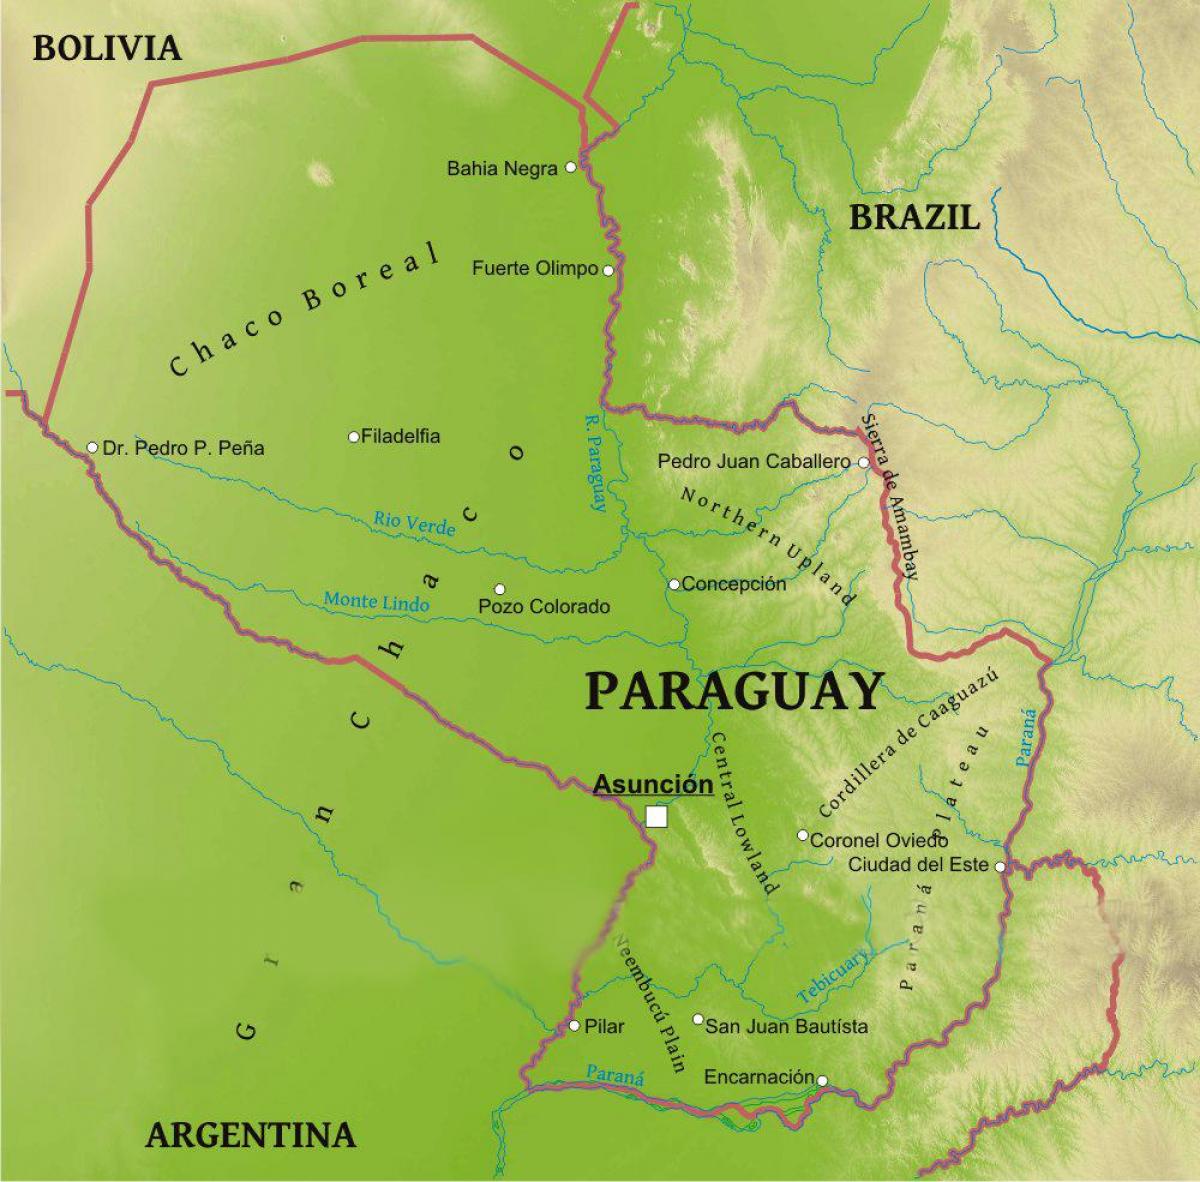 Ramani ya Paraguay jiografia